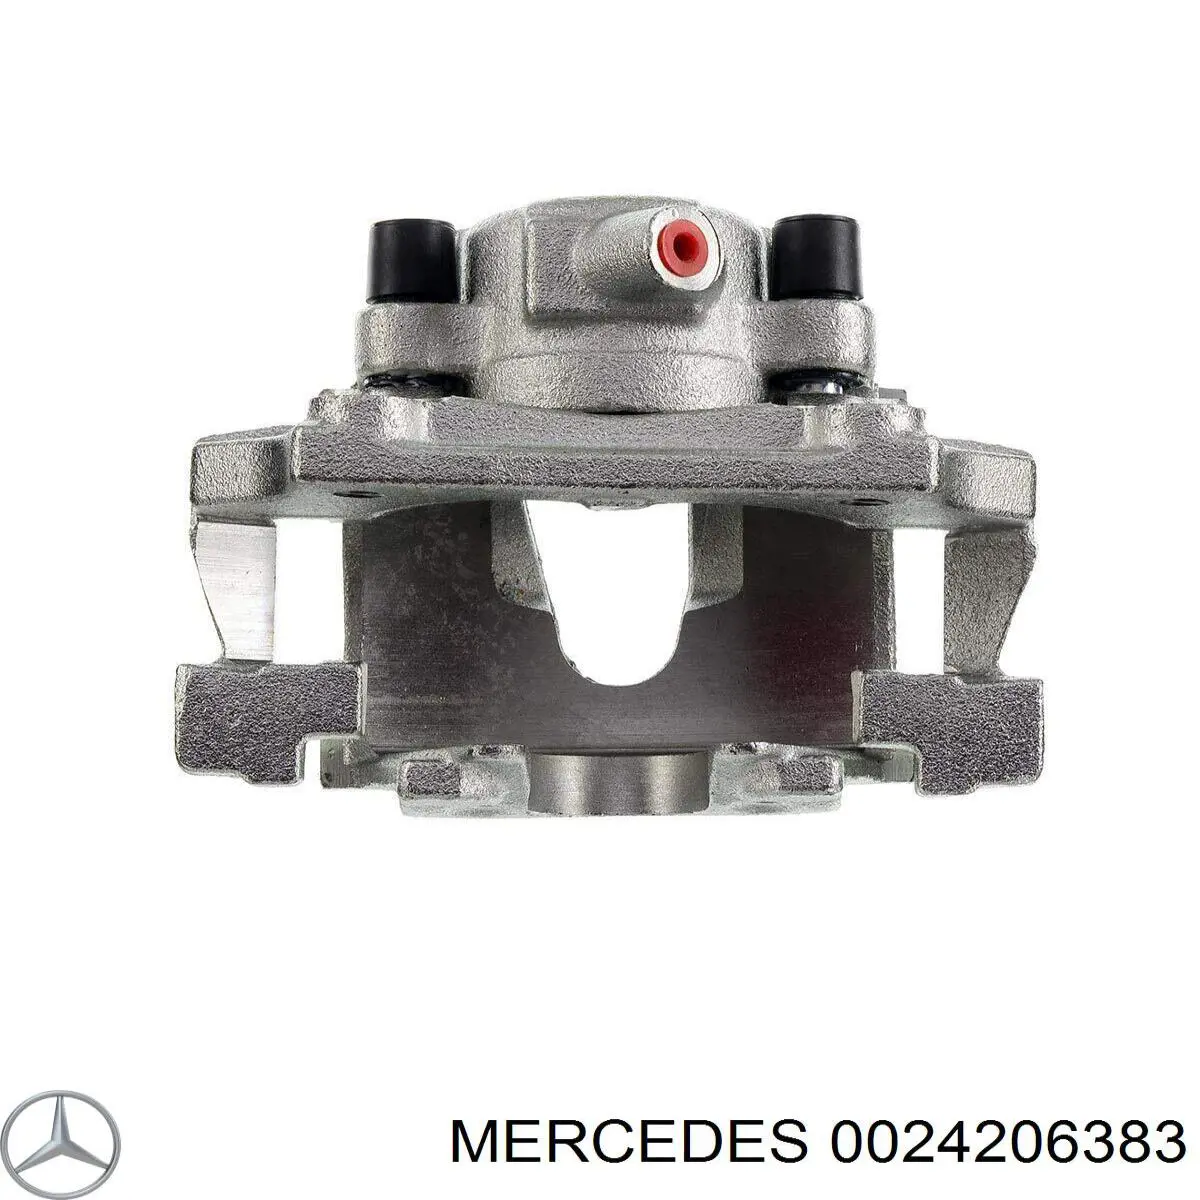 0024206383 Mercedes pinza de freno delantera izquierda